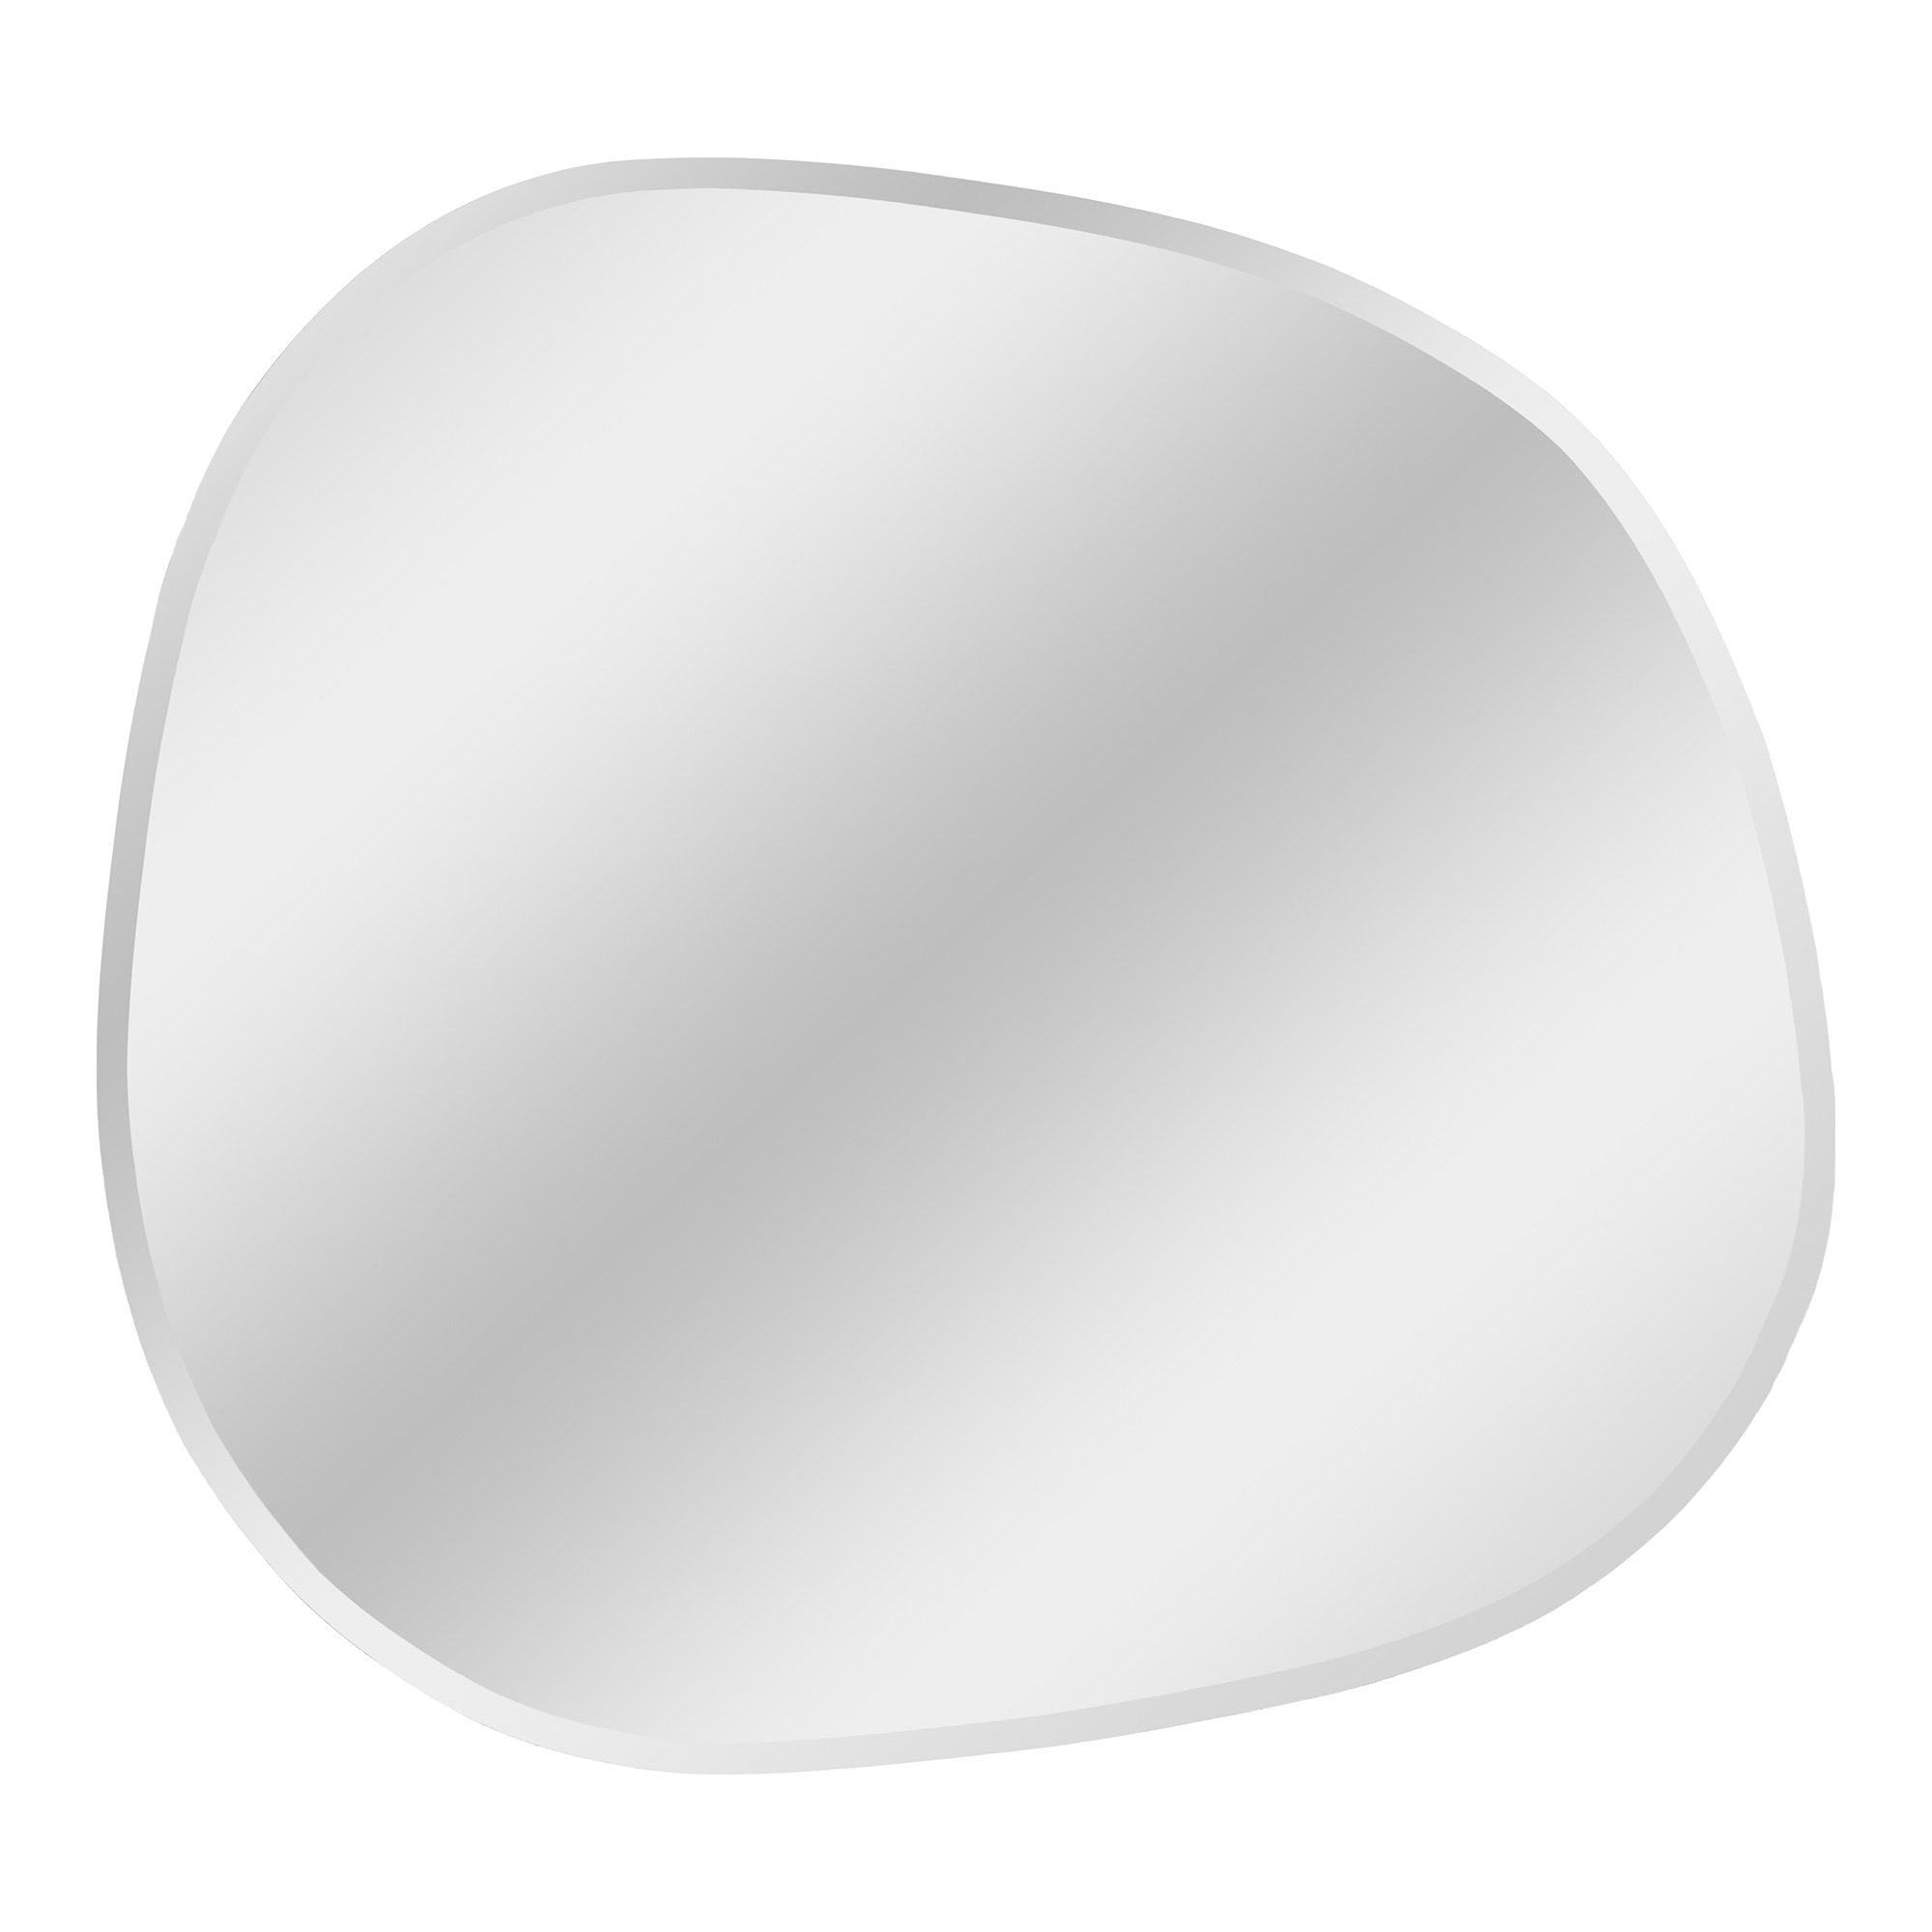 Bangalore Spejl - Spejl, Organisk Form, Facetslebet Kant, 60X70 Cm ⎮ 5713917028559 ⎮ 4001715 